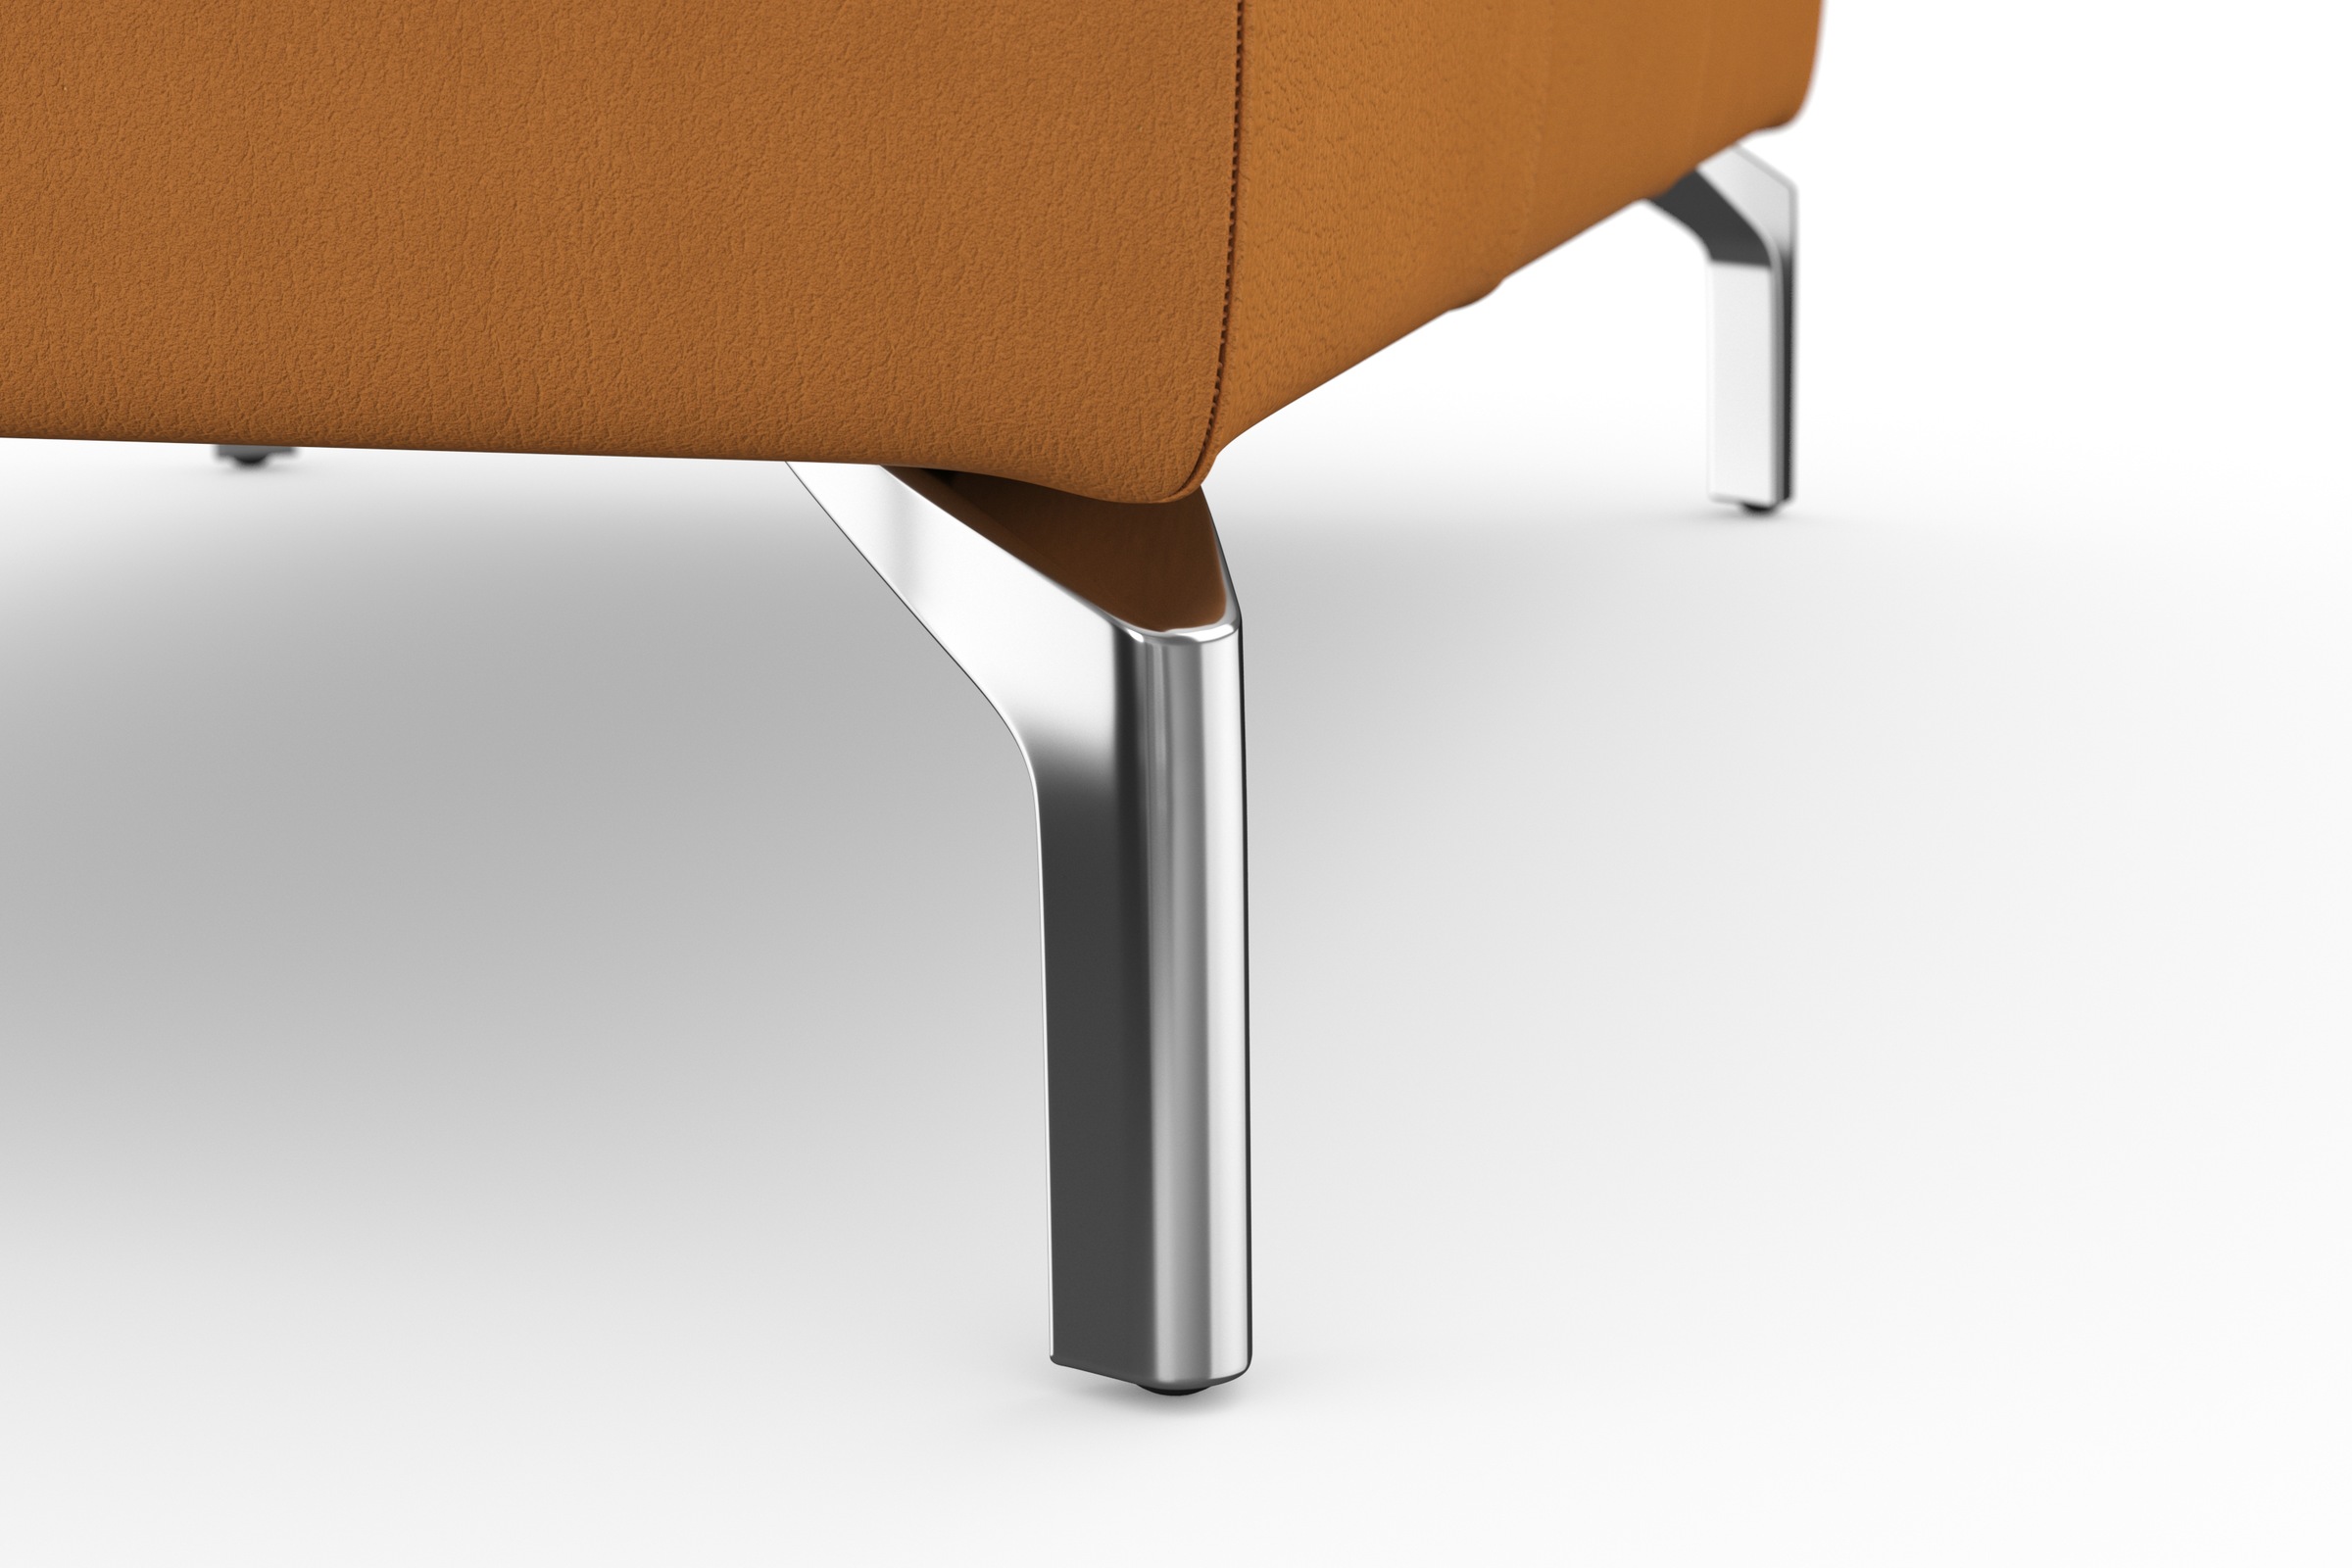 sit&more Hocker »Bendigo«, mit Klappfunktion, Bodenfreiheit 15 cm, wahlweise in 2 Fussfarben